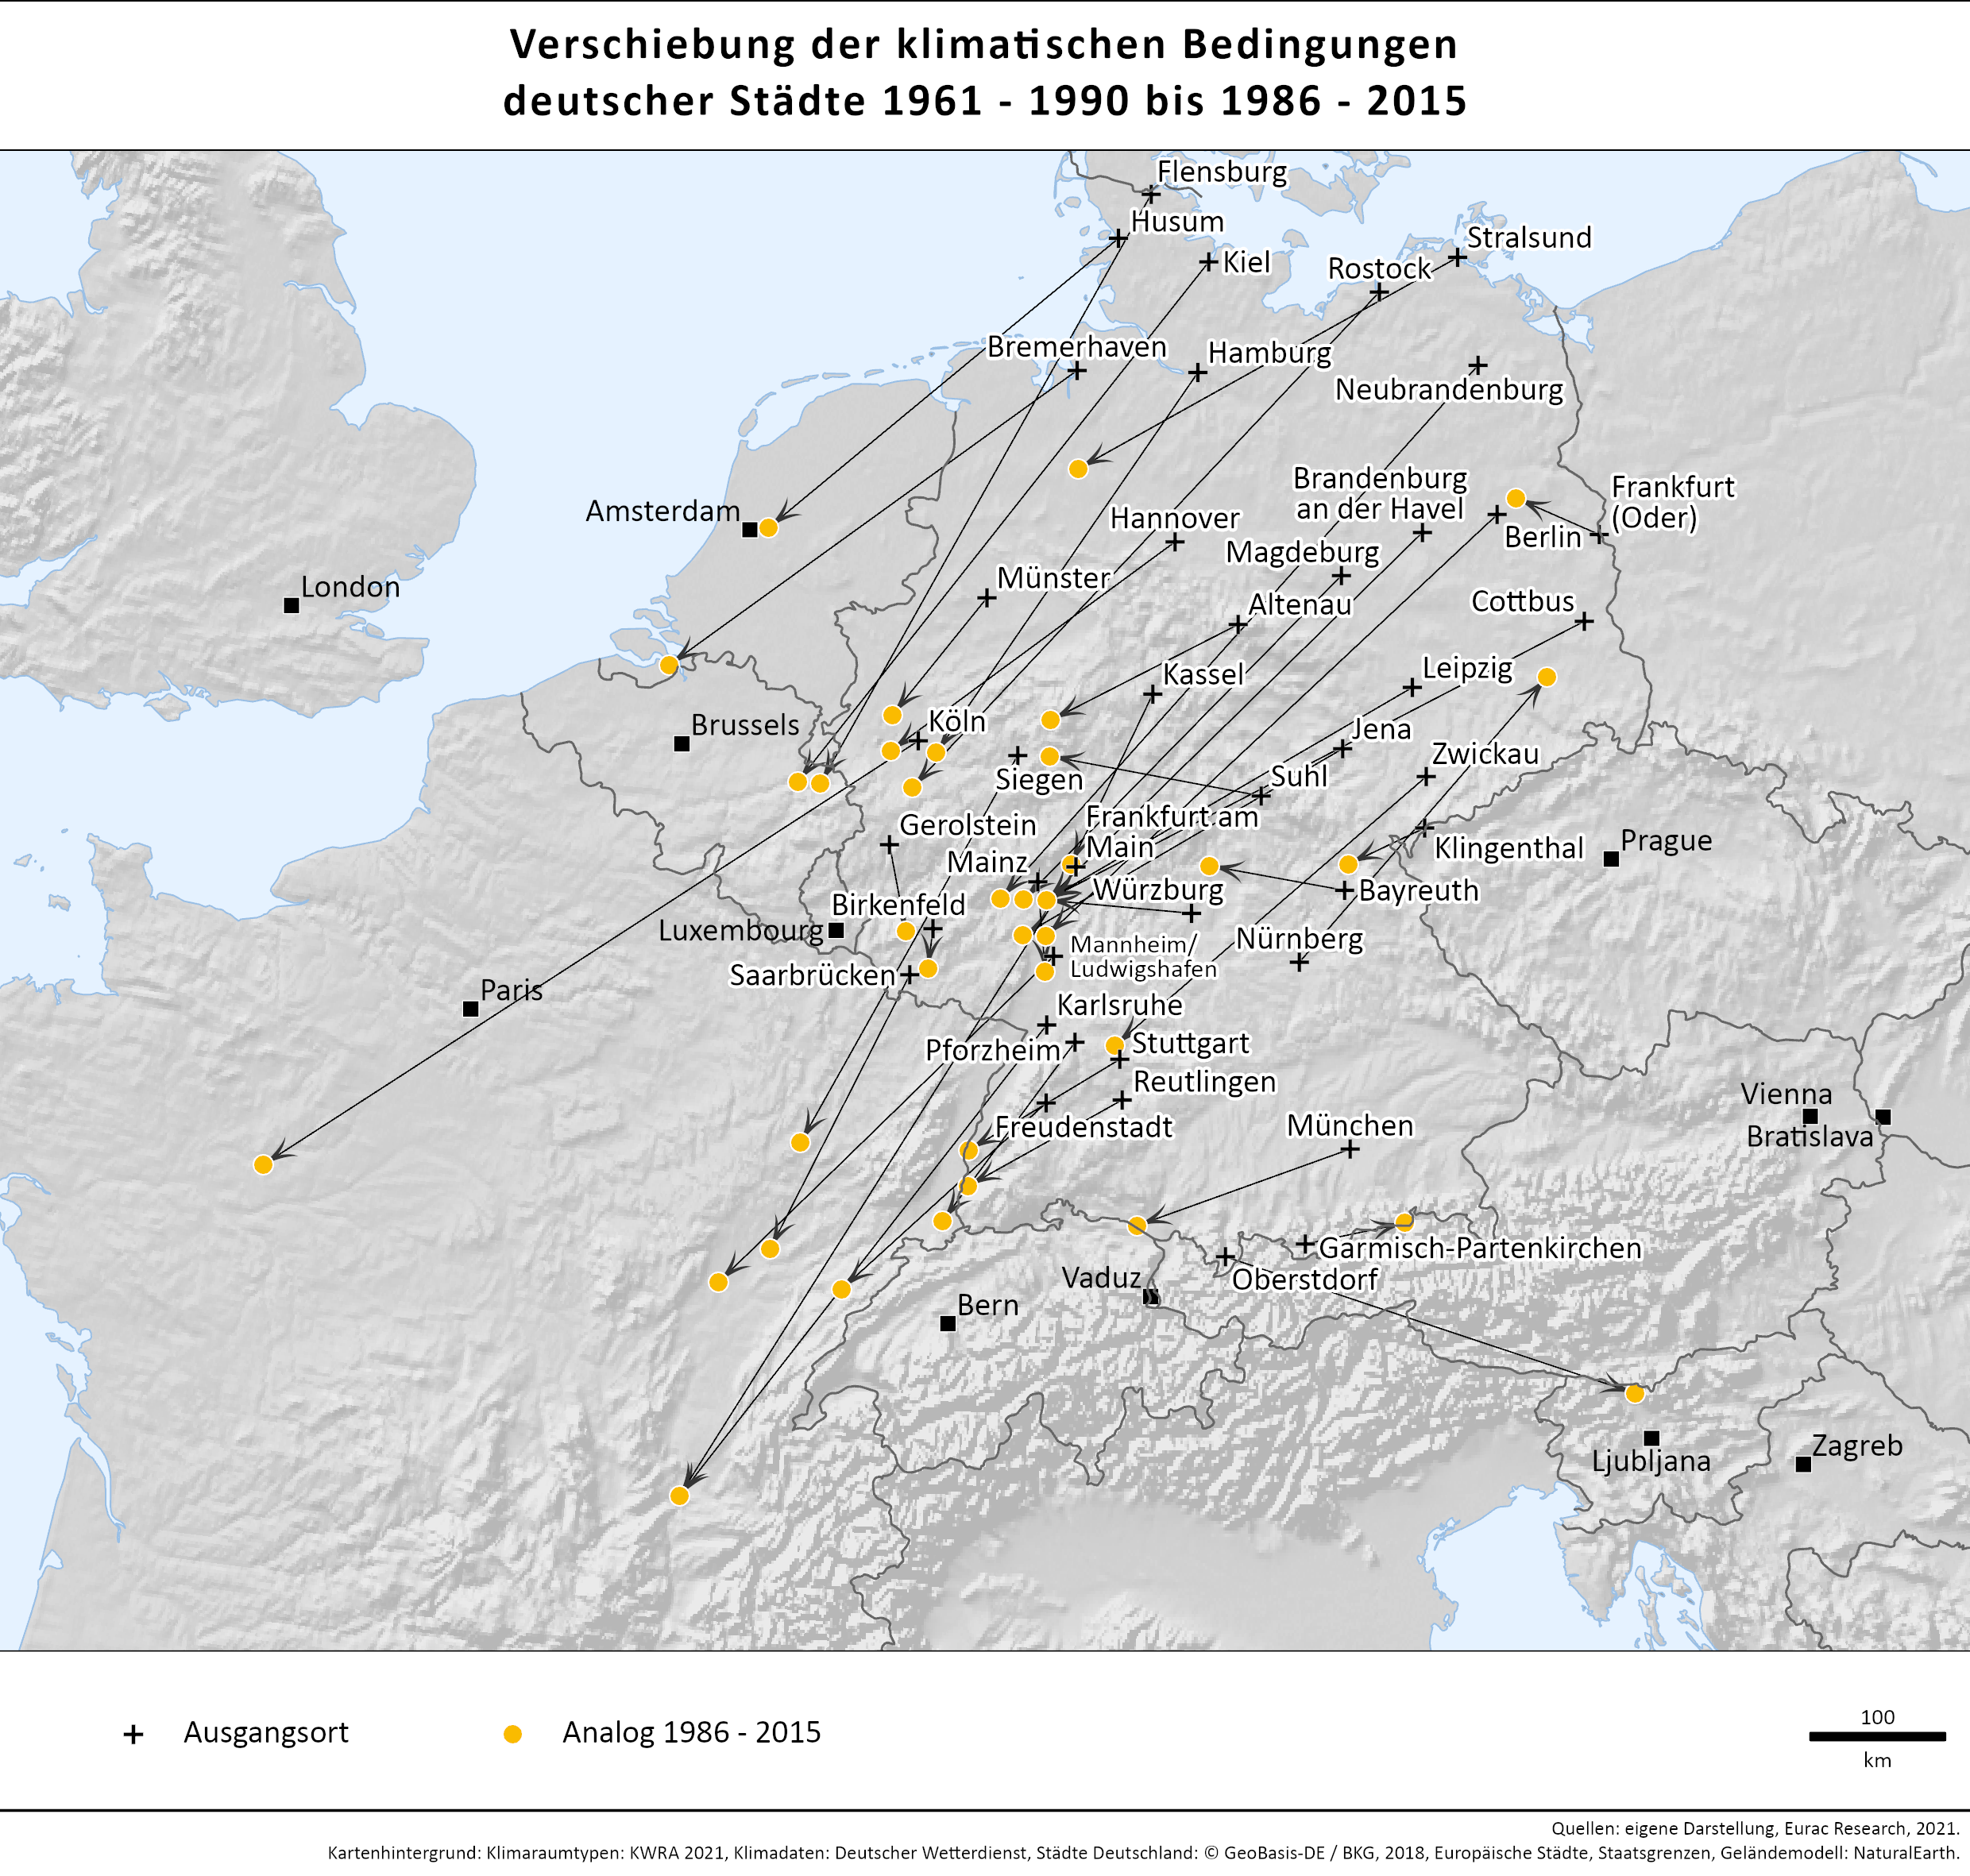 Zu sehen sind die beschriebenen Klimaanalogien der deutschen Städte in einer Europakarte für den Zeitraum 1986-2015